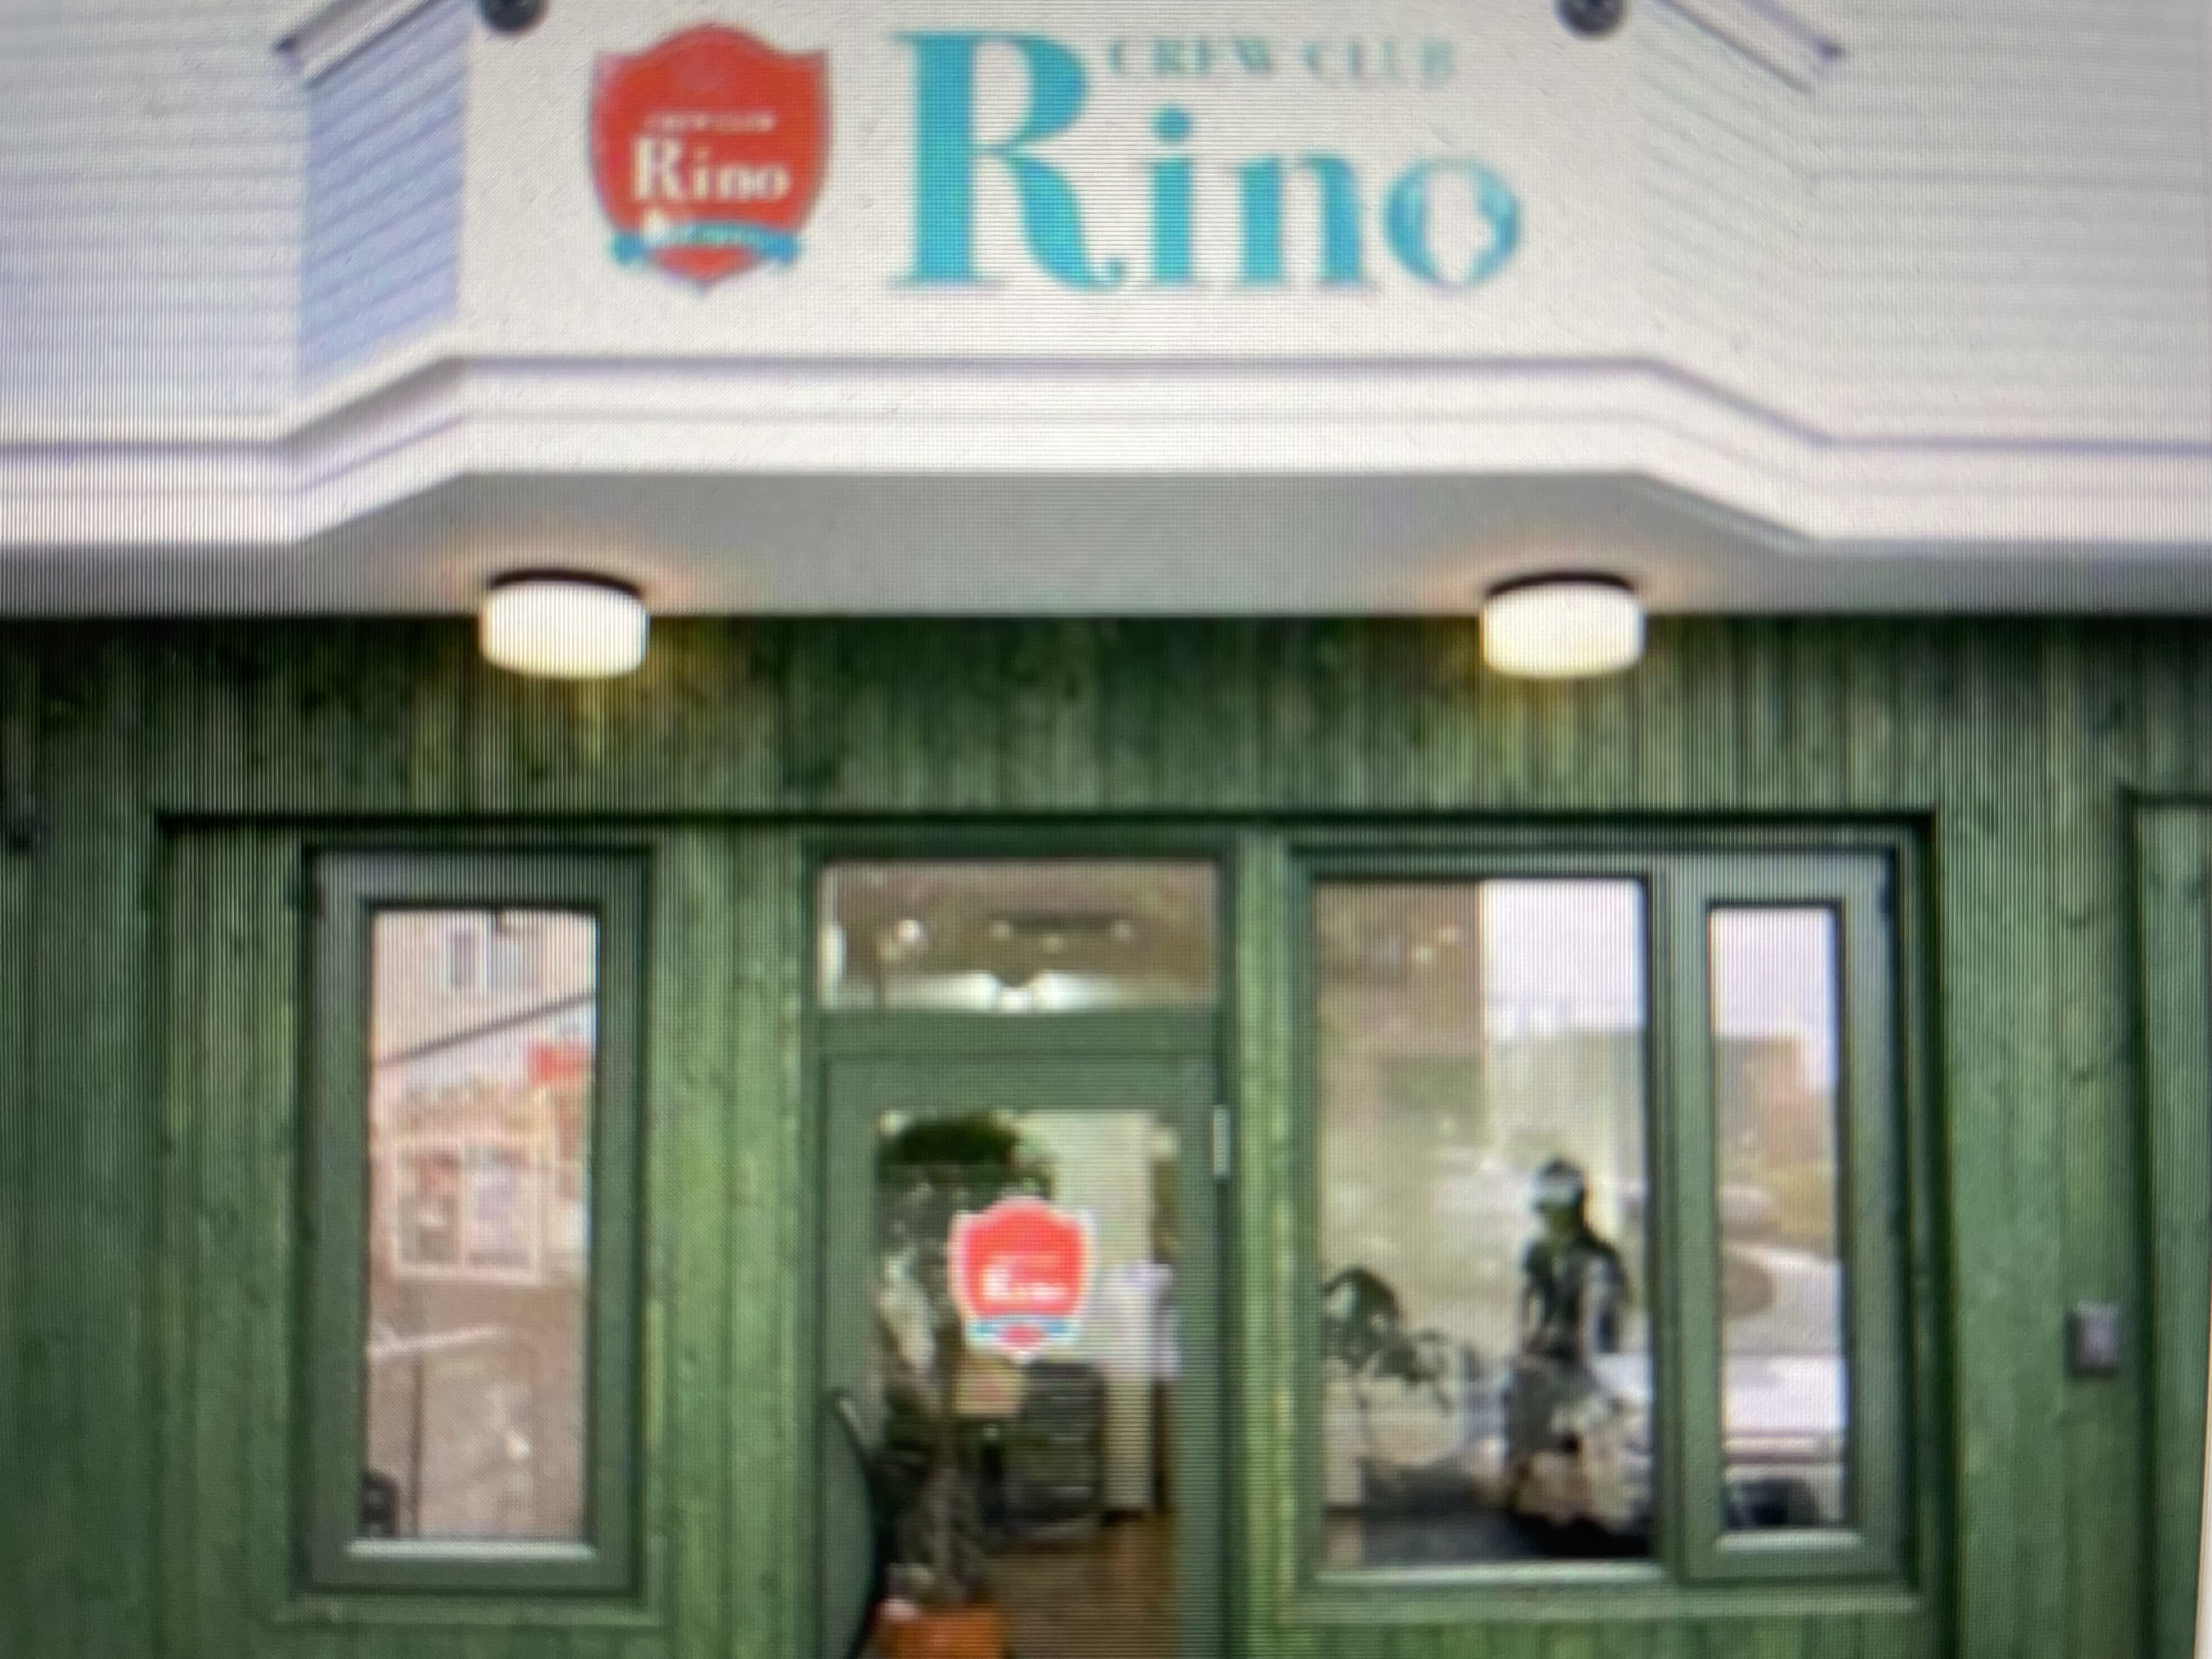 CREW CLUB Rinoのアイキャッチ画像